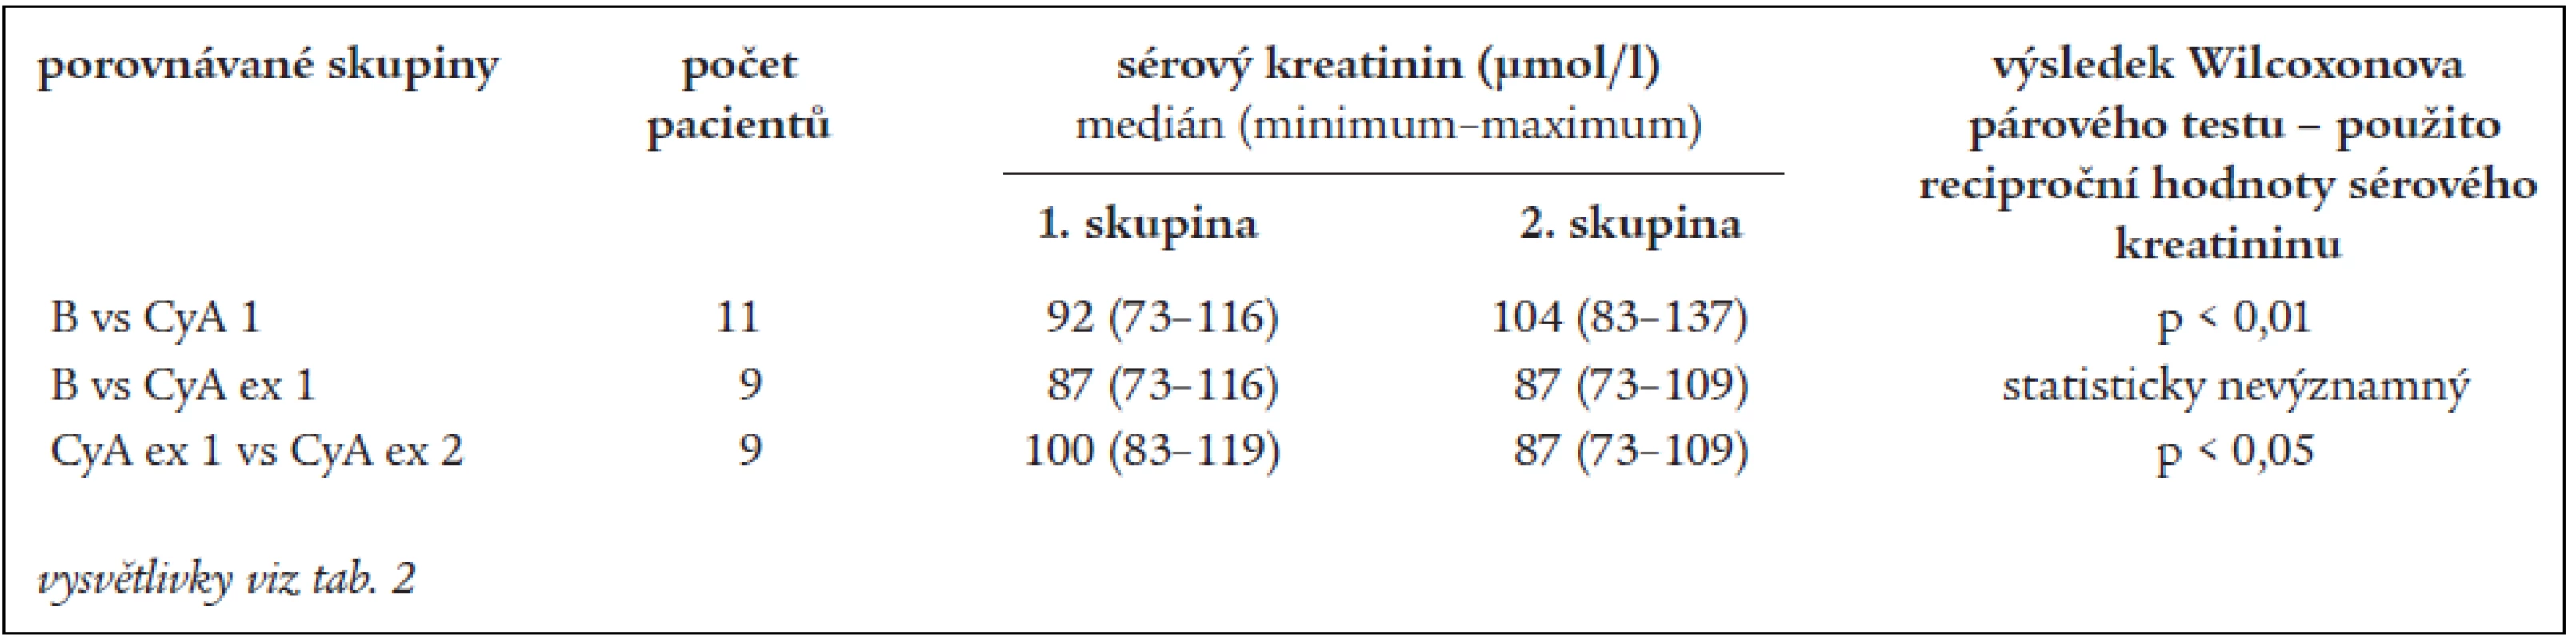 Vývoj sérového kreatininu u podskupiny pacientů refrakterních na chlorambucil.